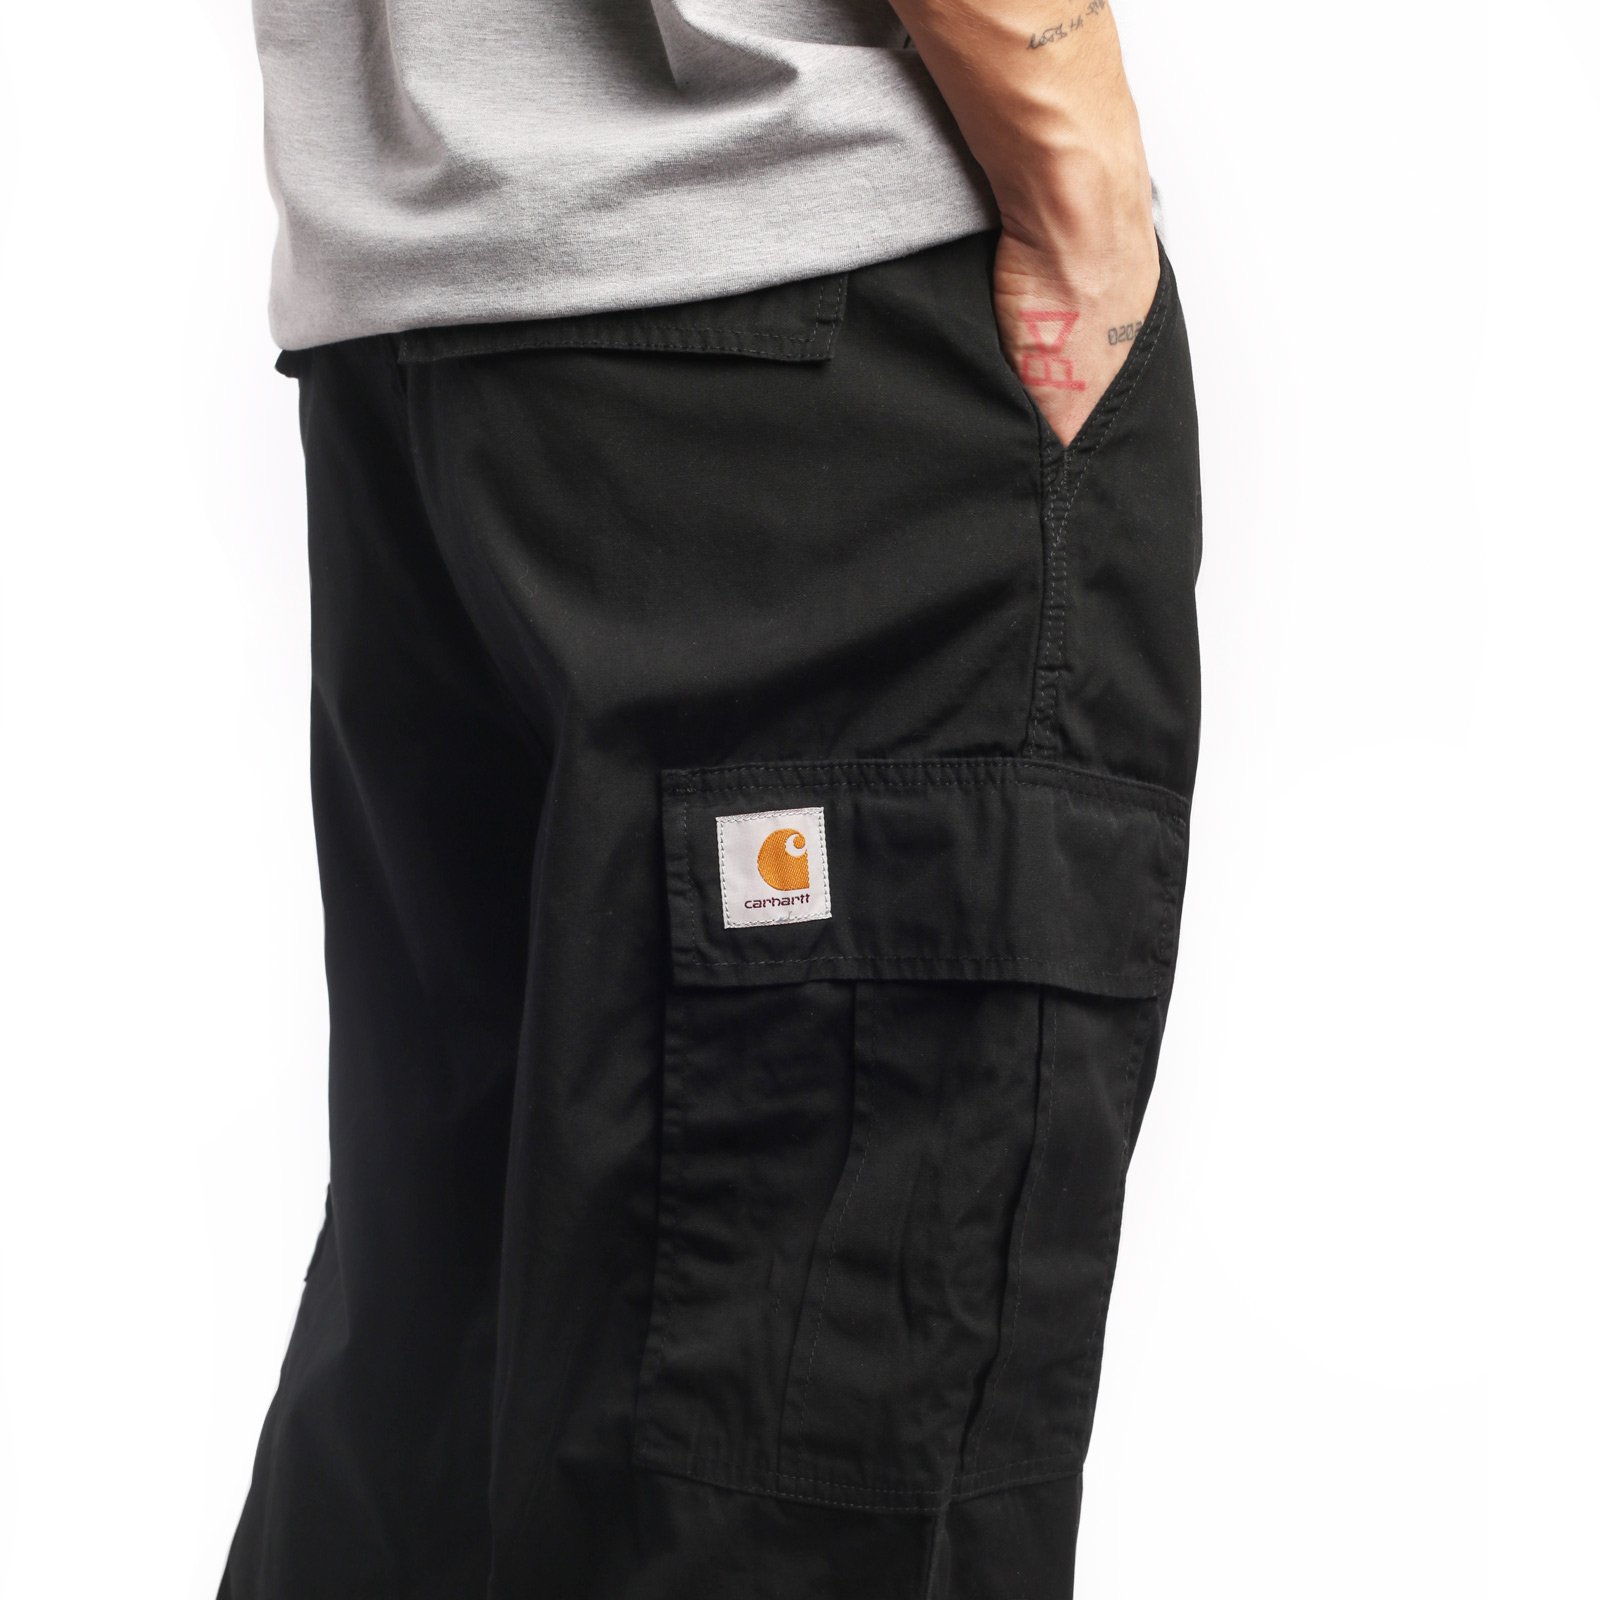 мужские брюки Carhartt WIP Cole Cargo Pant  (I030477-black)  - цена, описание, фото 4